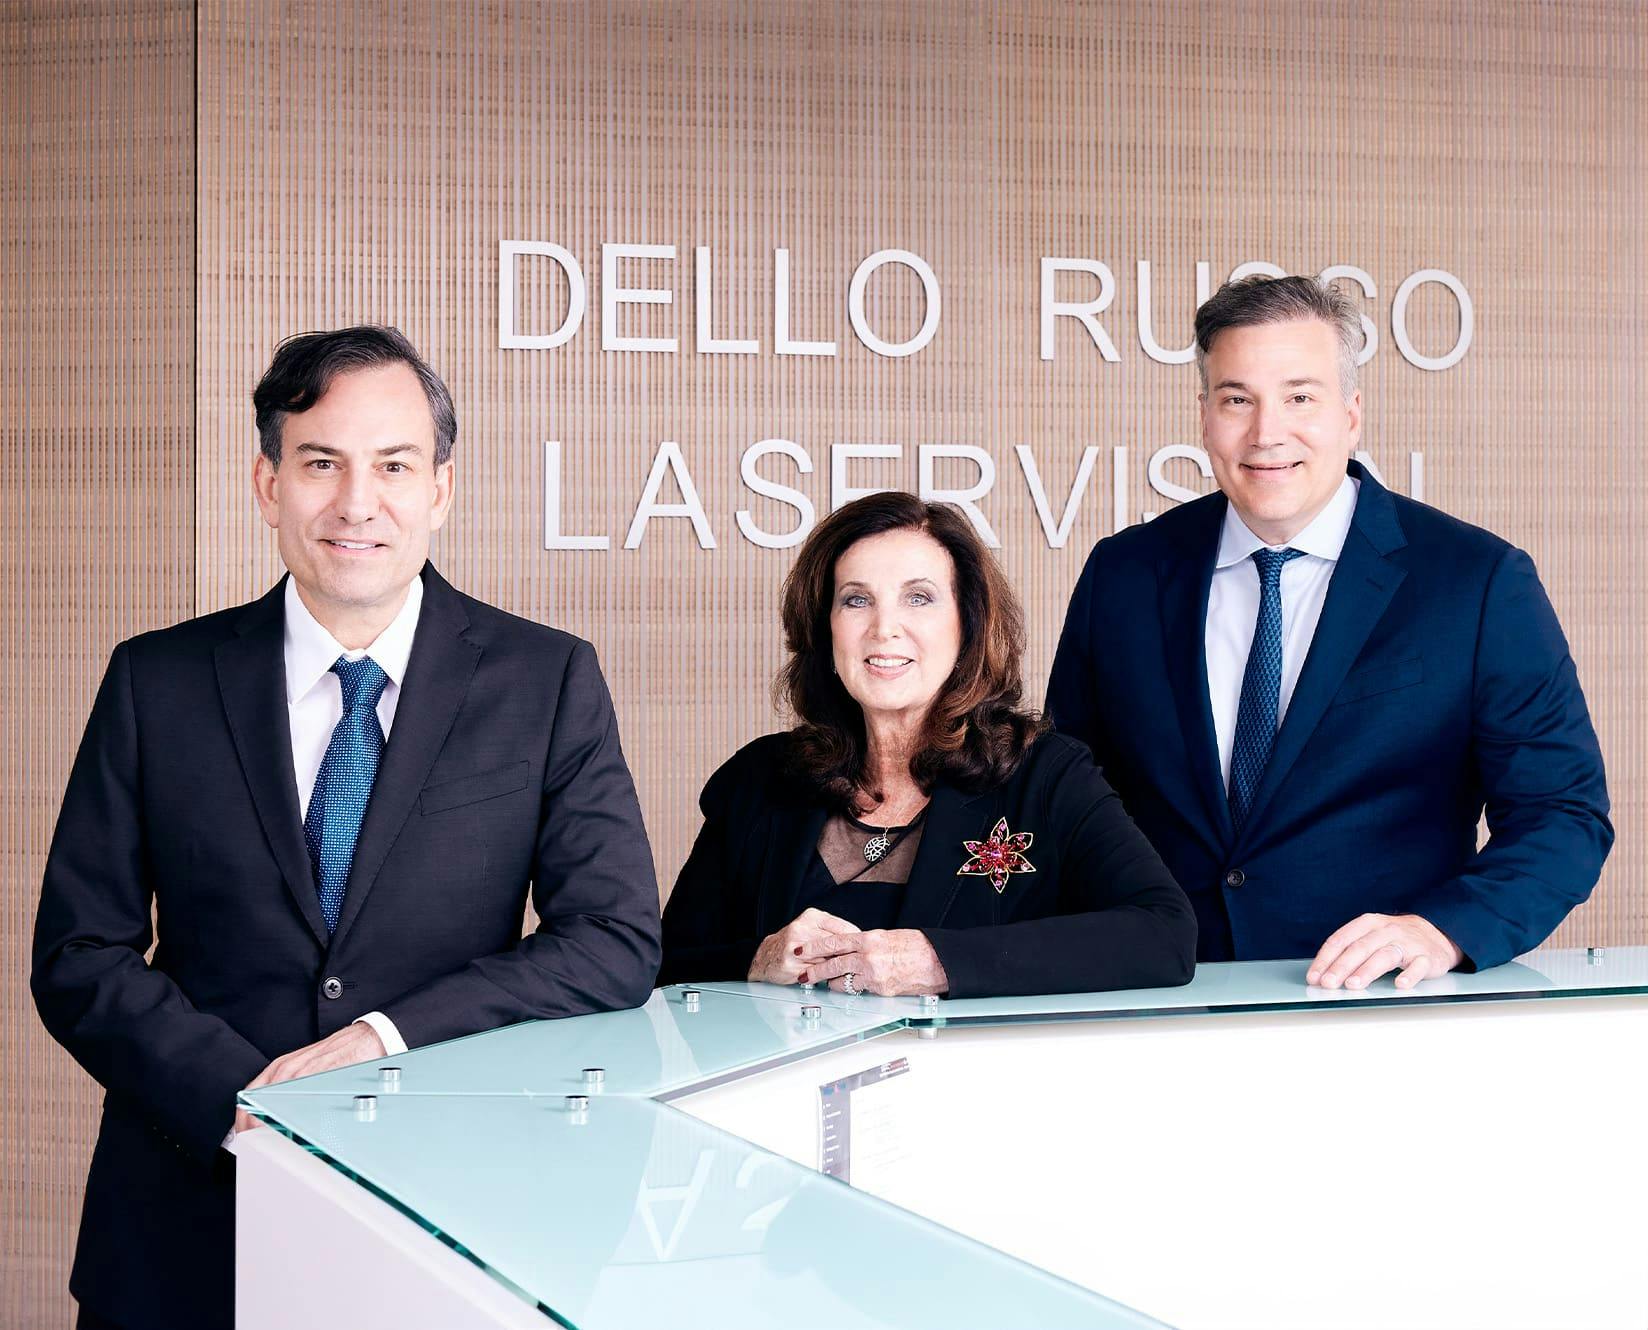 Doctors at Dello Russo Laser Vision